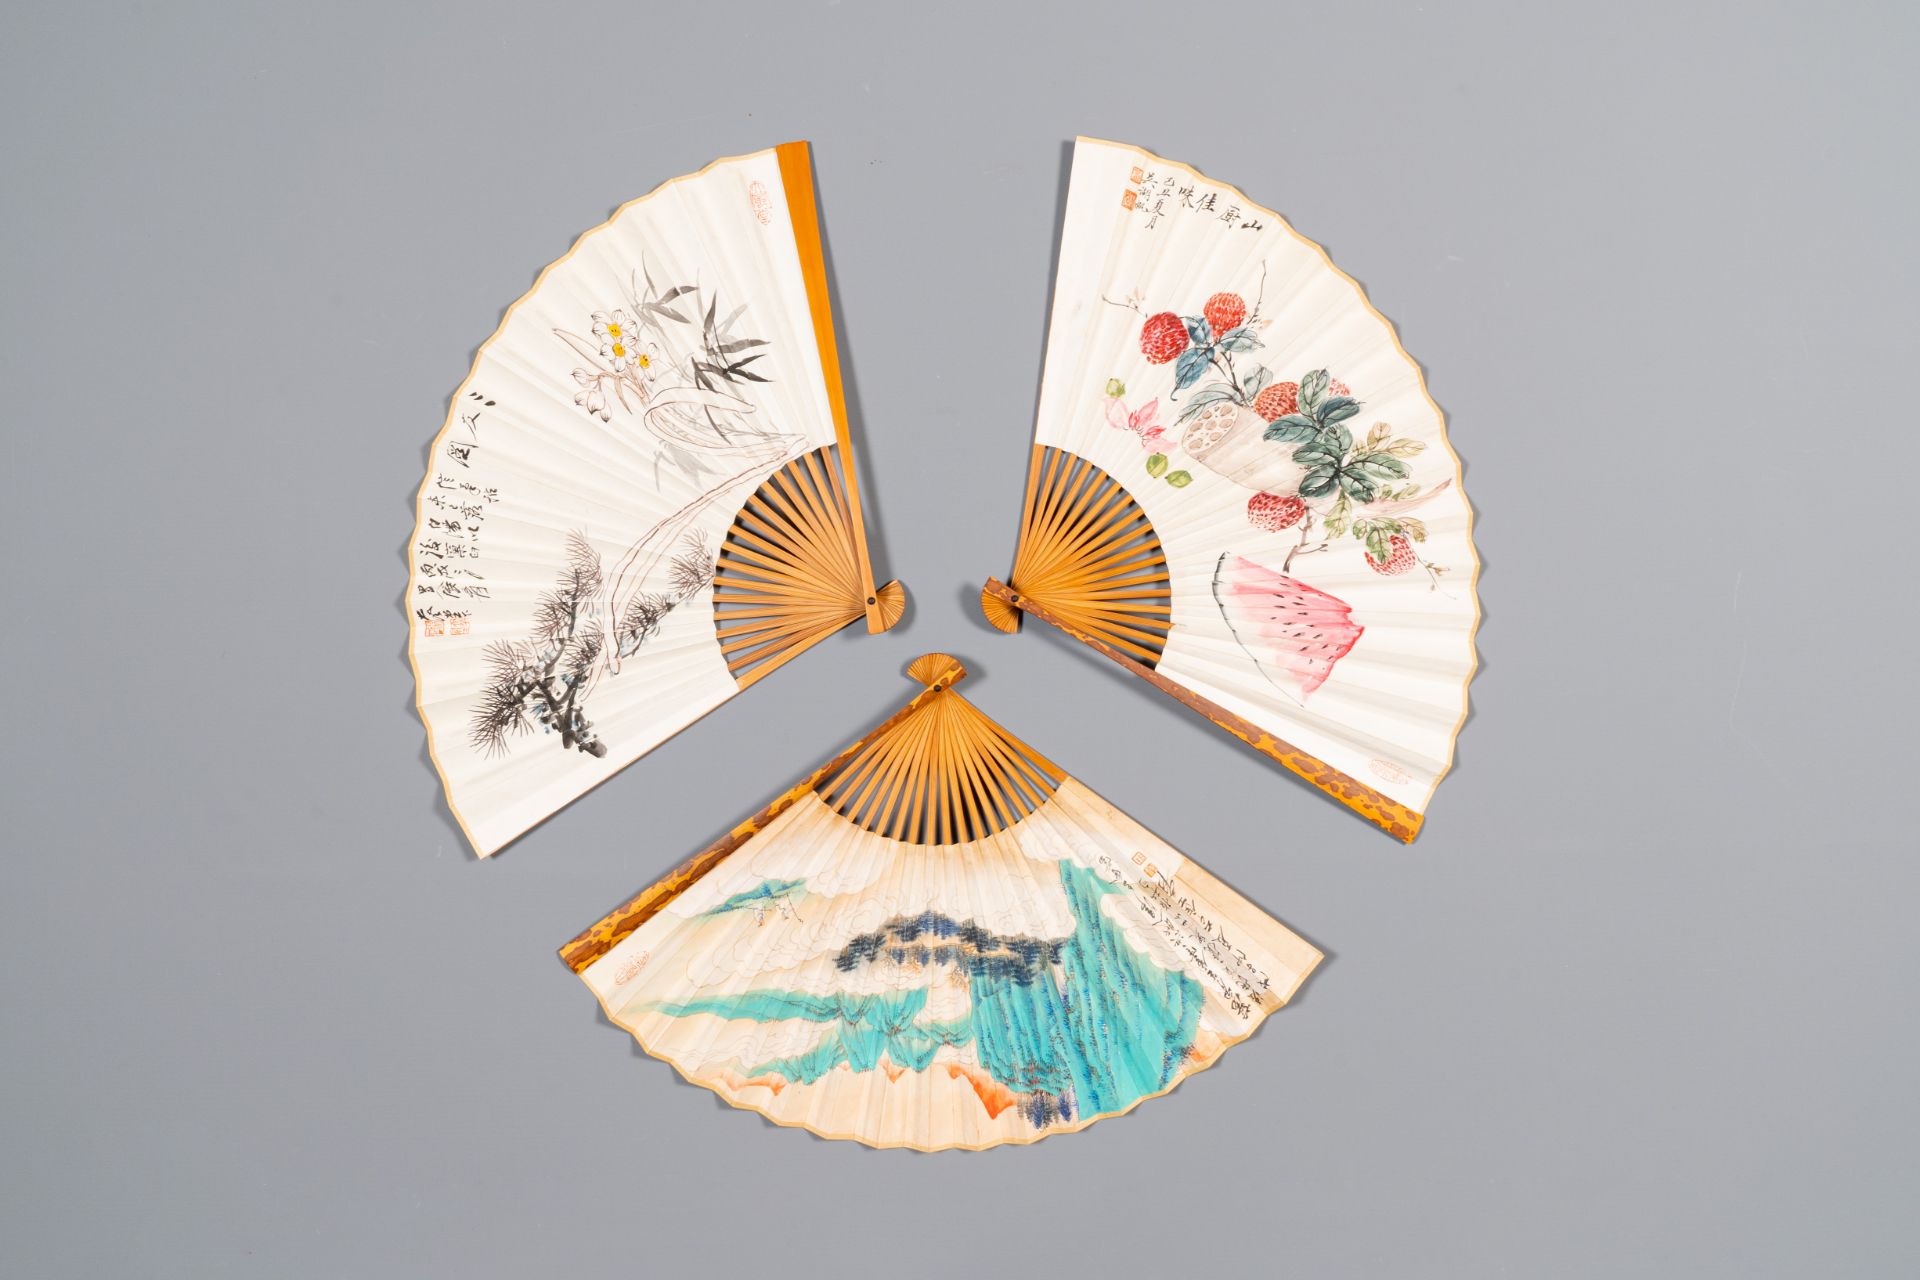 Three folding fans, follower of Zhang Daqian å¼µå¤§åƒ (1899-1983) and Wu Hufang å´æ¹–å¸† (1894-196